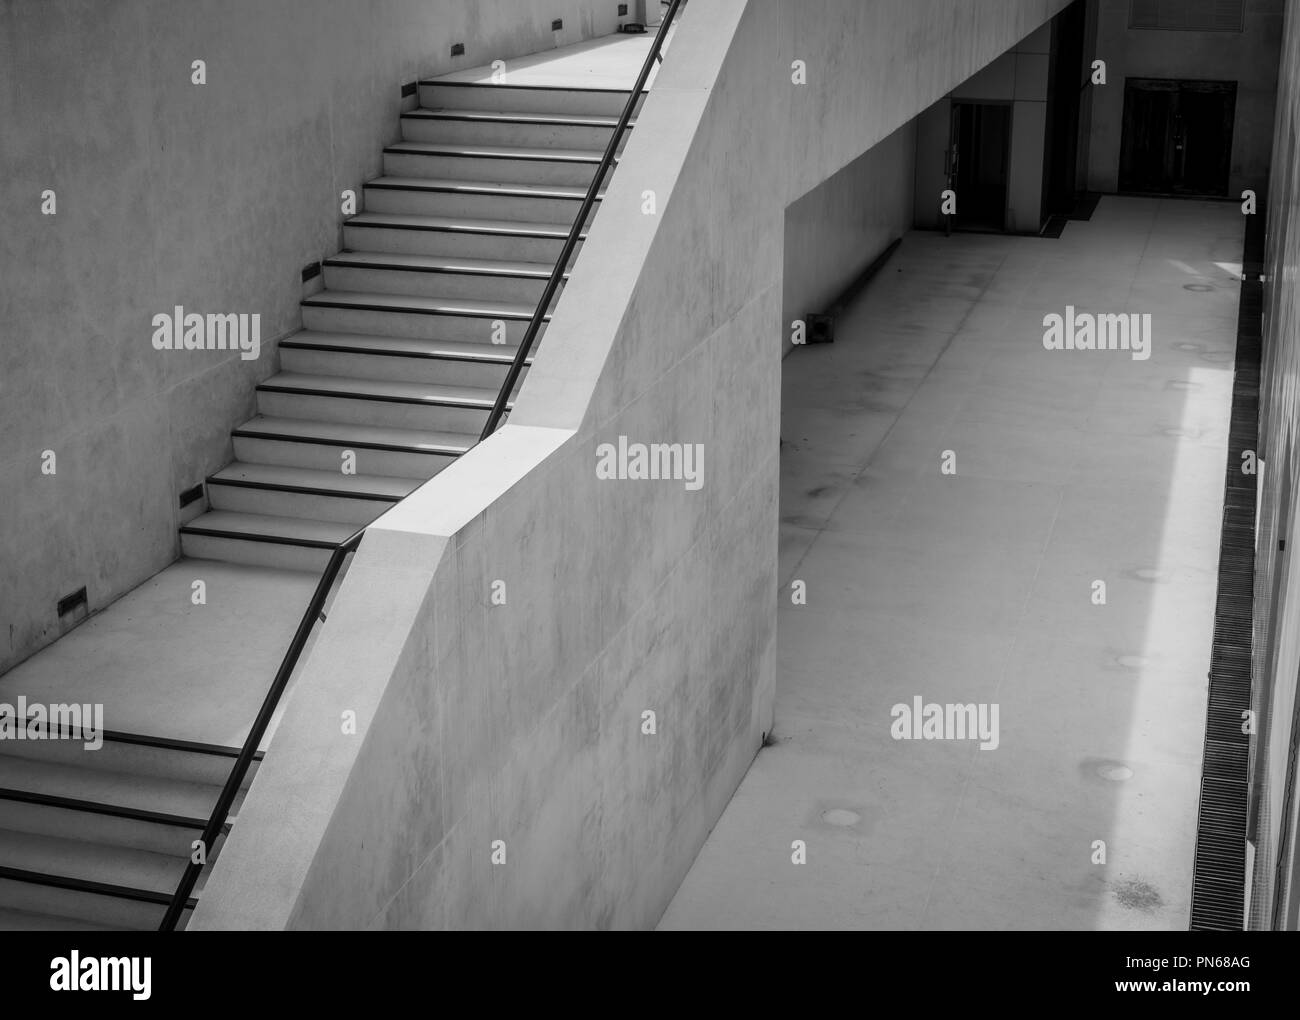 Escalier en béton moderne en plein air. Escaliers pour piscine service de nettoyage. À côté de l'escalier de la piscine. L'étape de vie concept. Escalier piscine archi Banque D'Images